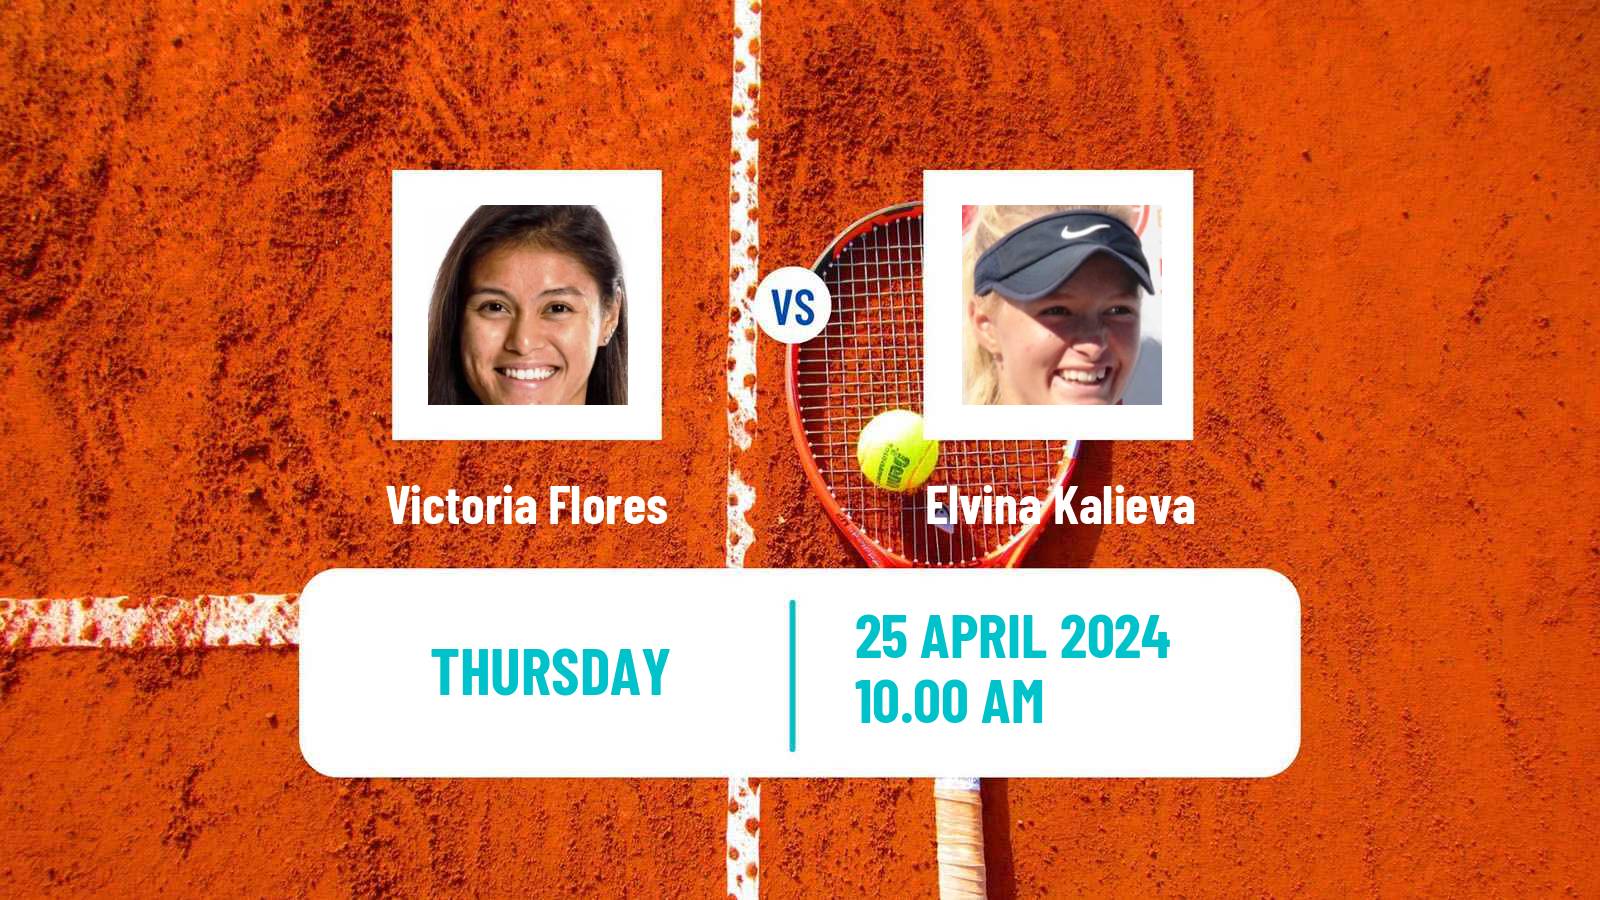 Tennis ITF W75 Charlottesville Va Women Victoria Flores - Elvina Kalieva